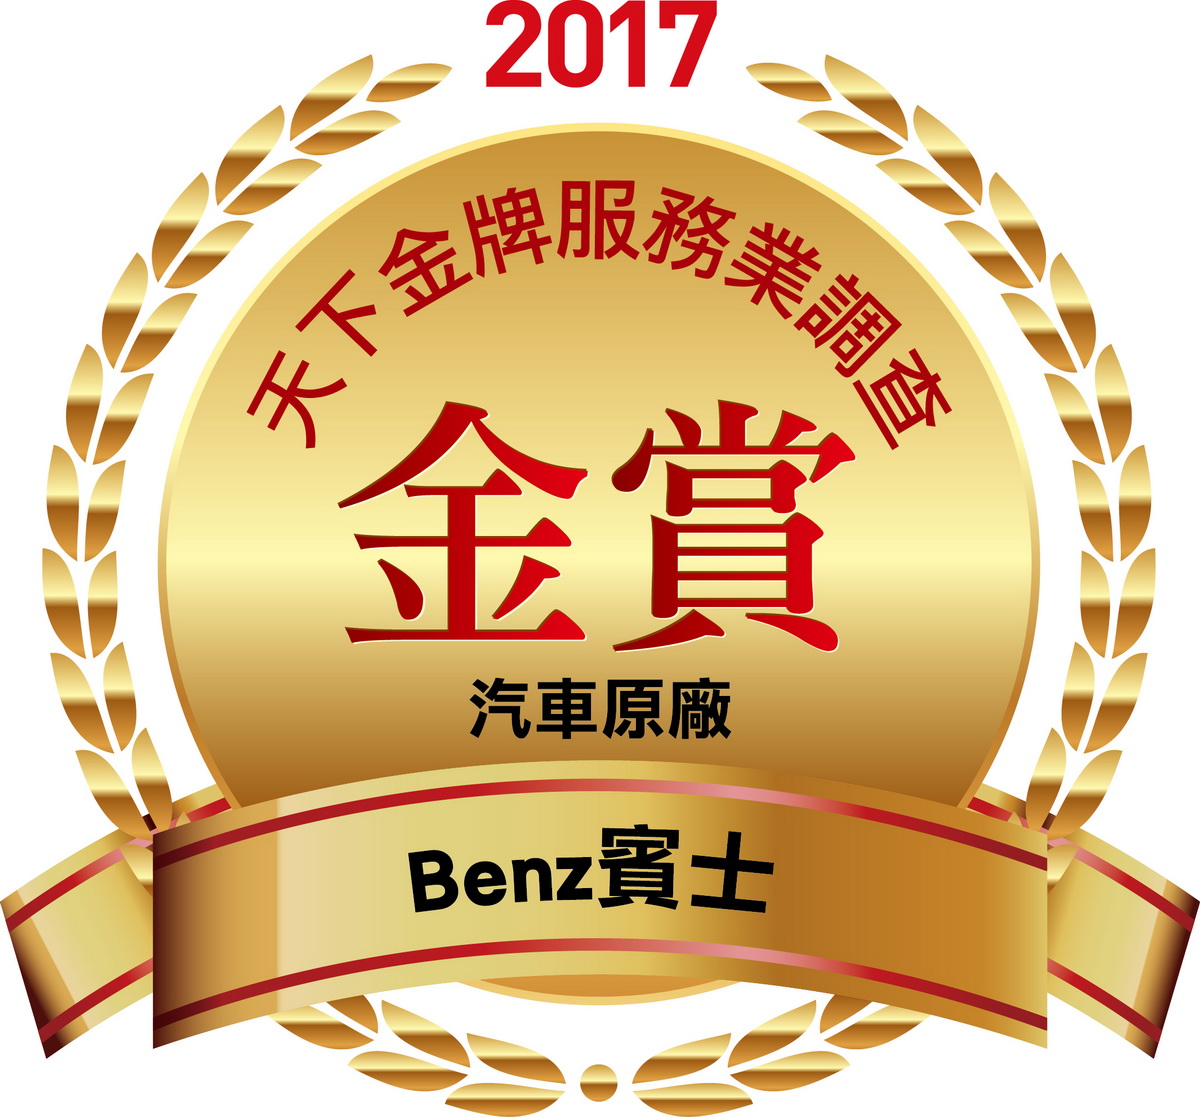 台灣賓士以前瞻性的客製化服務，榮獲2017《天下雜誌》「金牌服務業-汽車原廠類」榜首.jpg